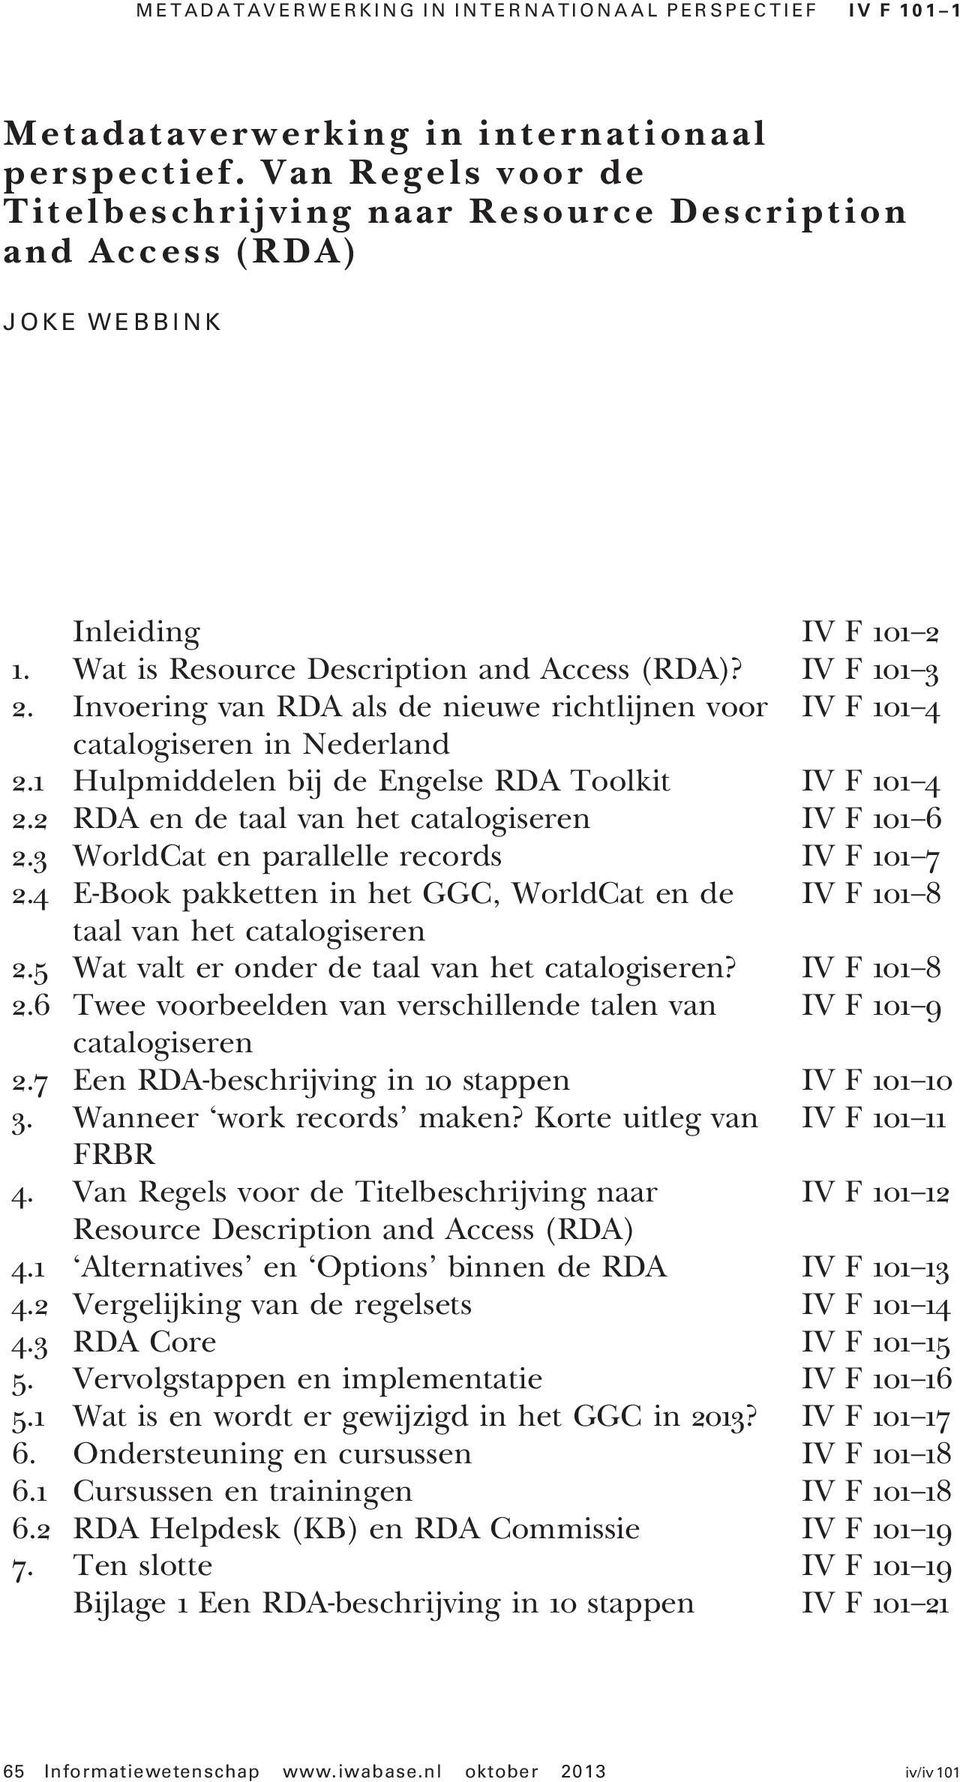 Invoering van RDA als de nieuwe richtlijnen voor IV F 101 4 catalogiseren in Nederland 2.1 Hulpmiddelen bij de Engelse RDA Toolkit IV F 101 4 2.2 RDA en de taal van het catalogiseren IV F 101 6 2.